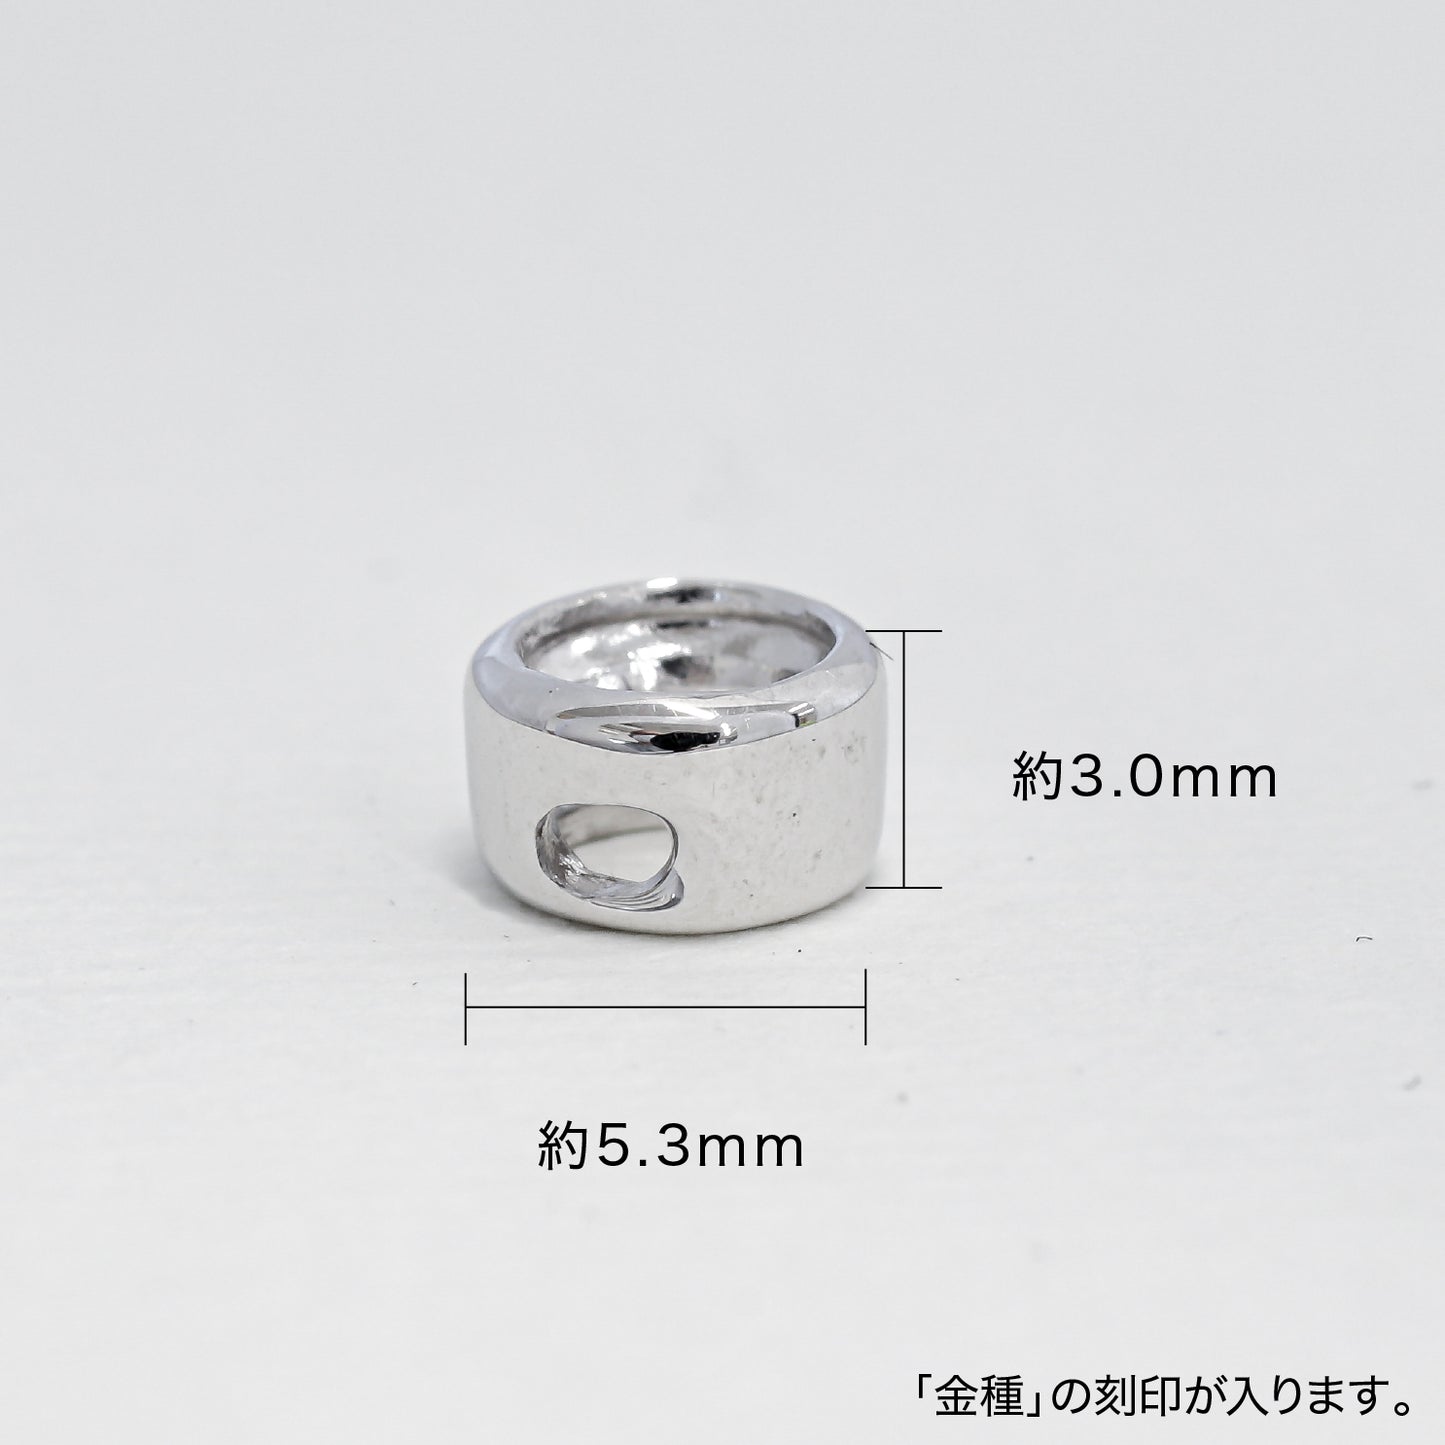 【空枠】4.3mm丸 0.30ct 覆輪ペンダント | wk53630